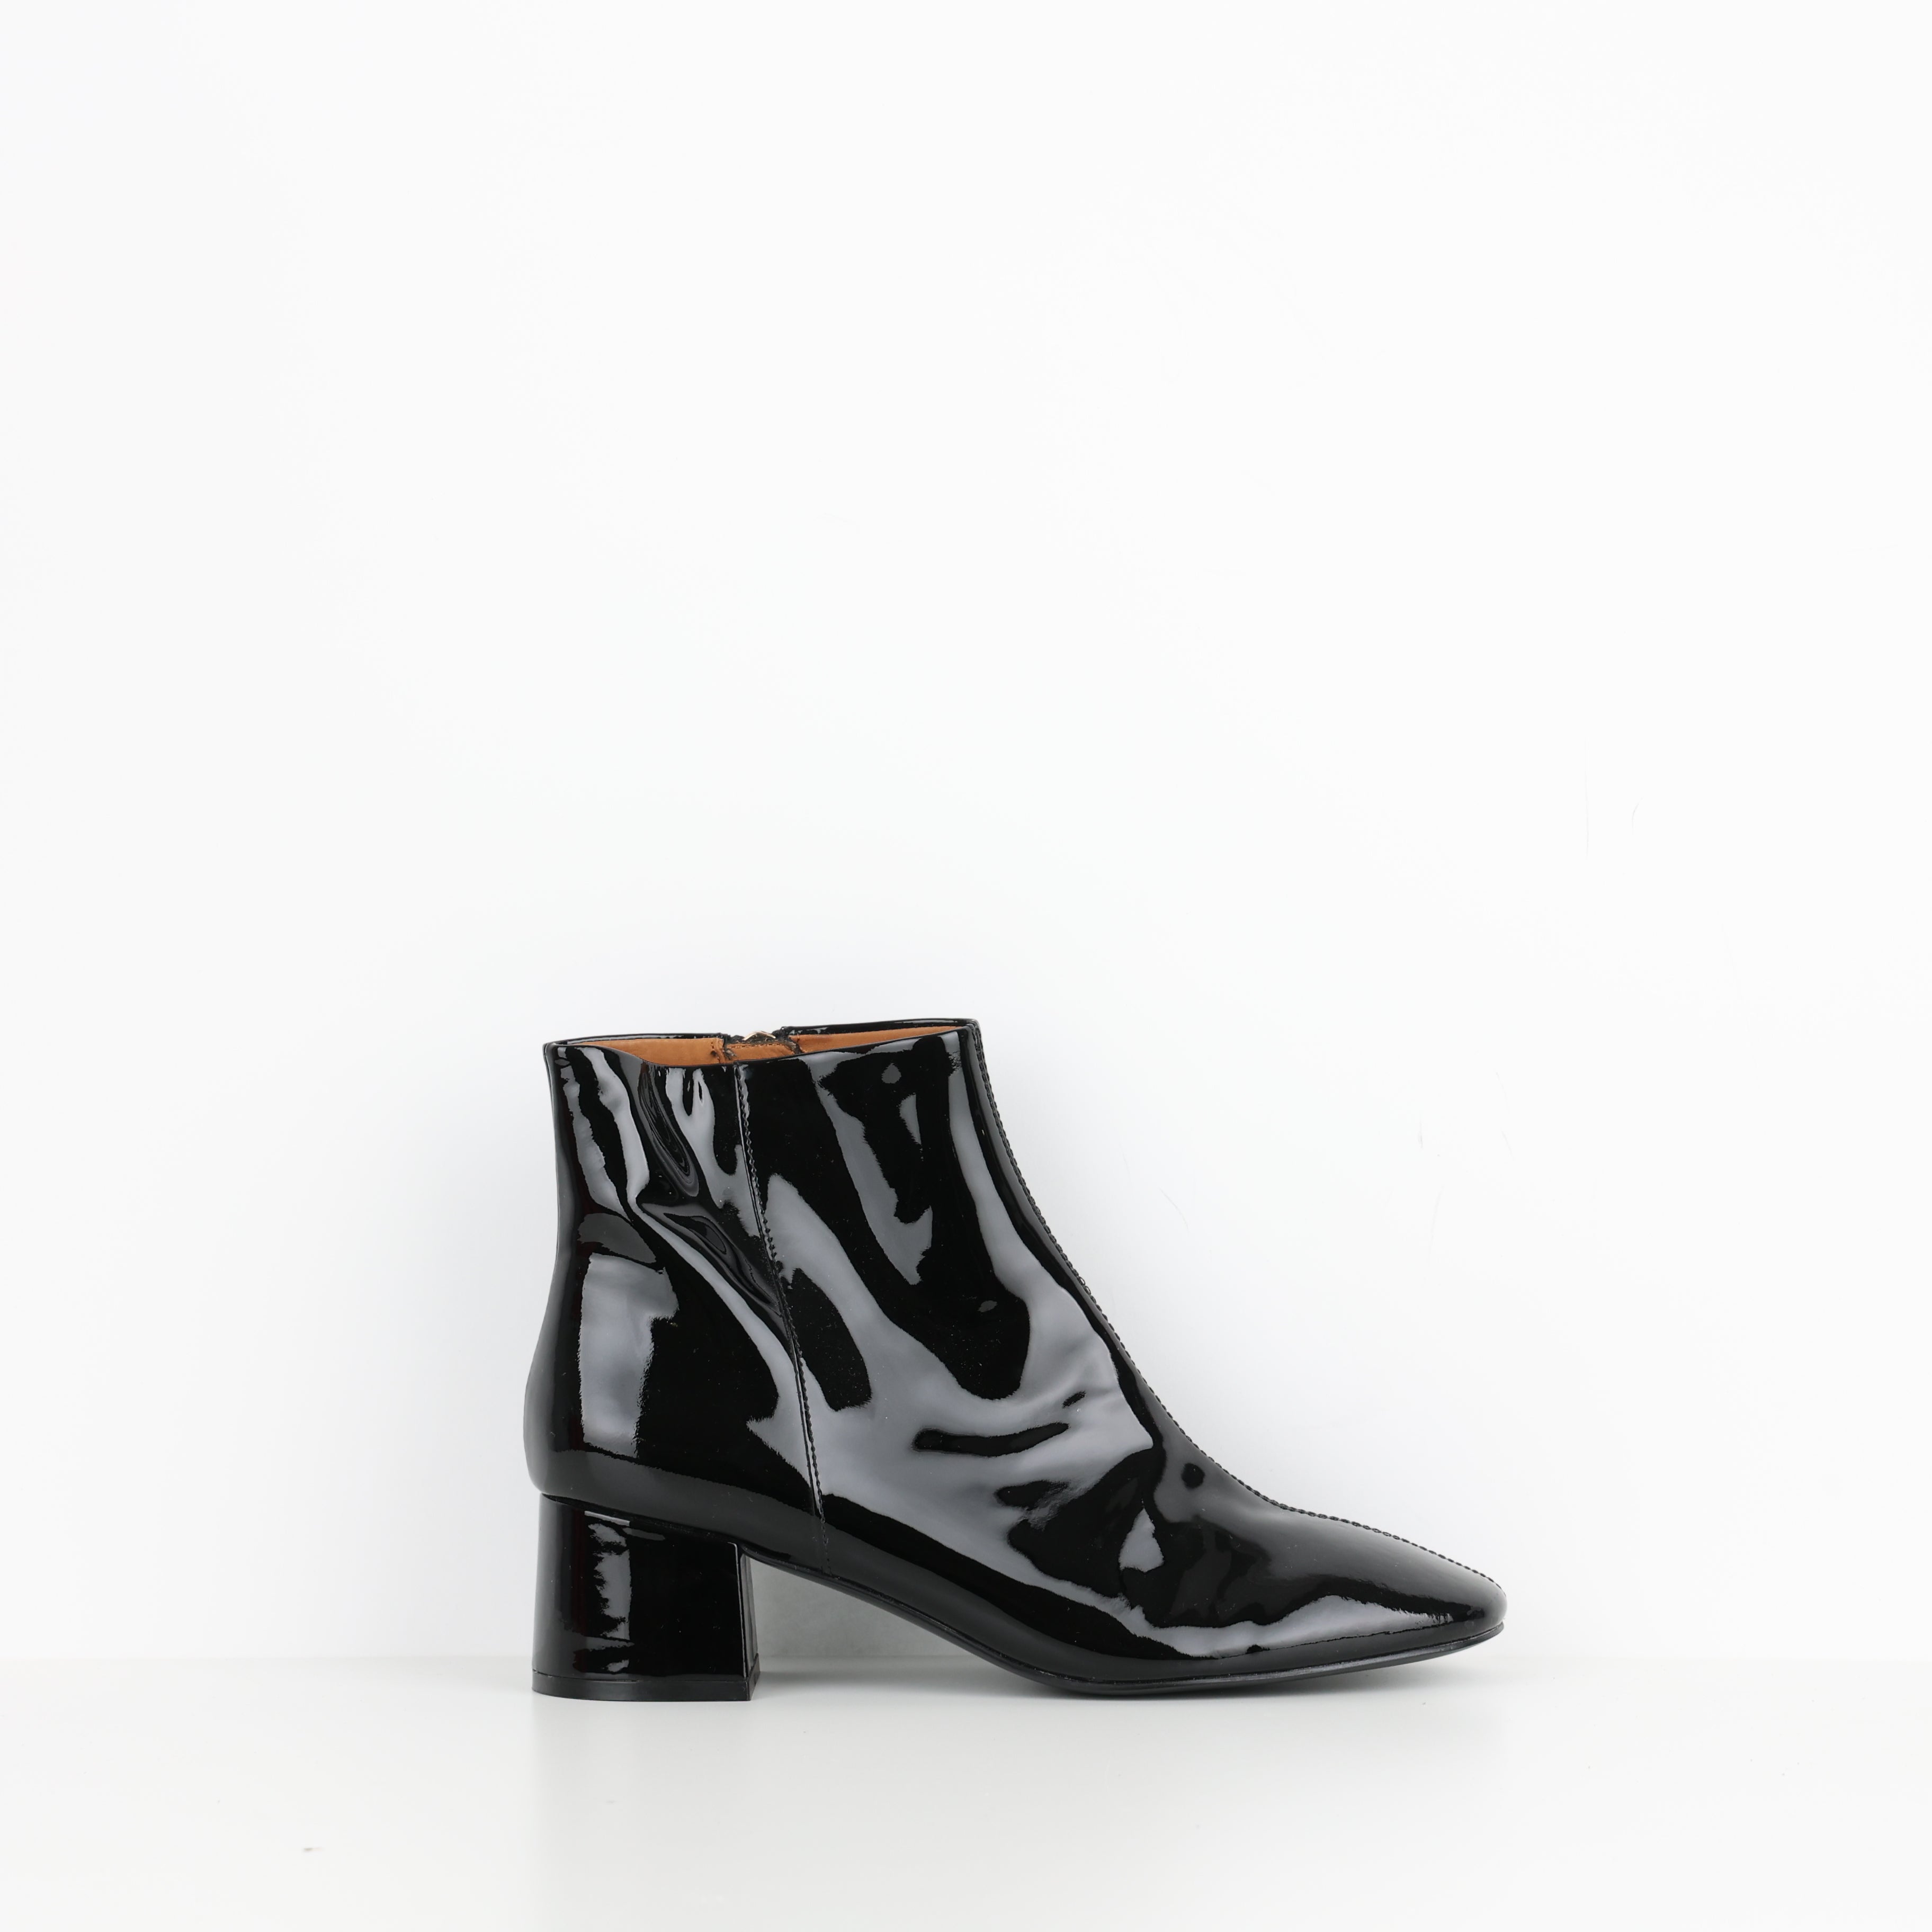 Boots , Shoe Size 39